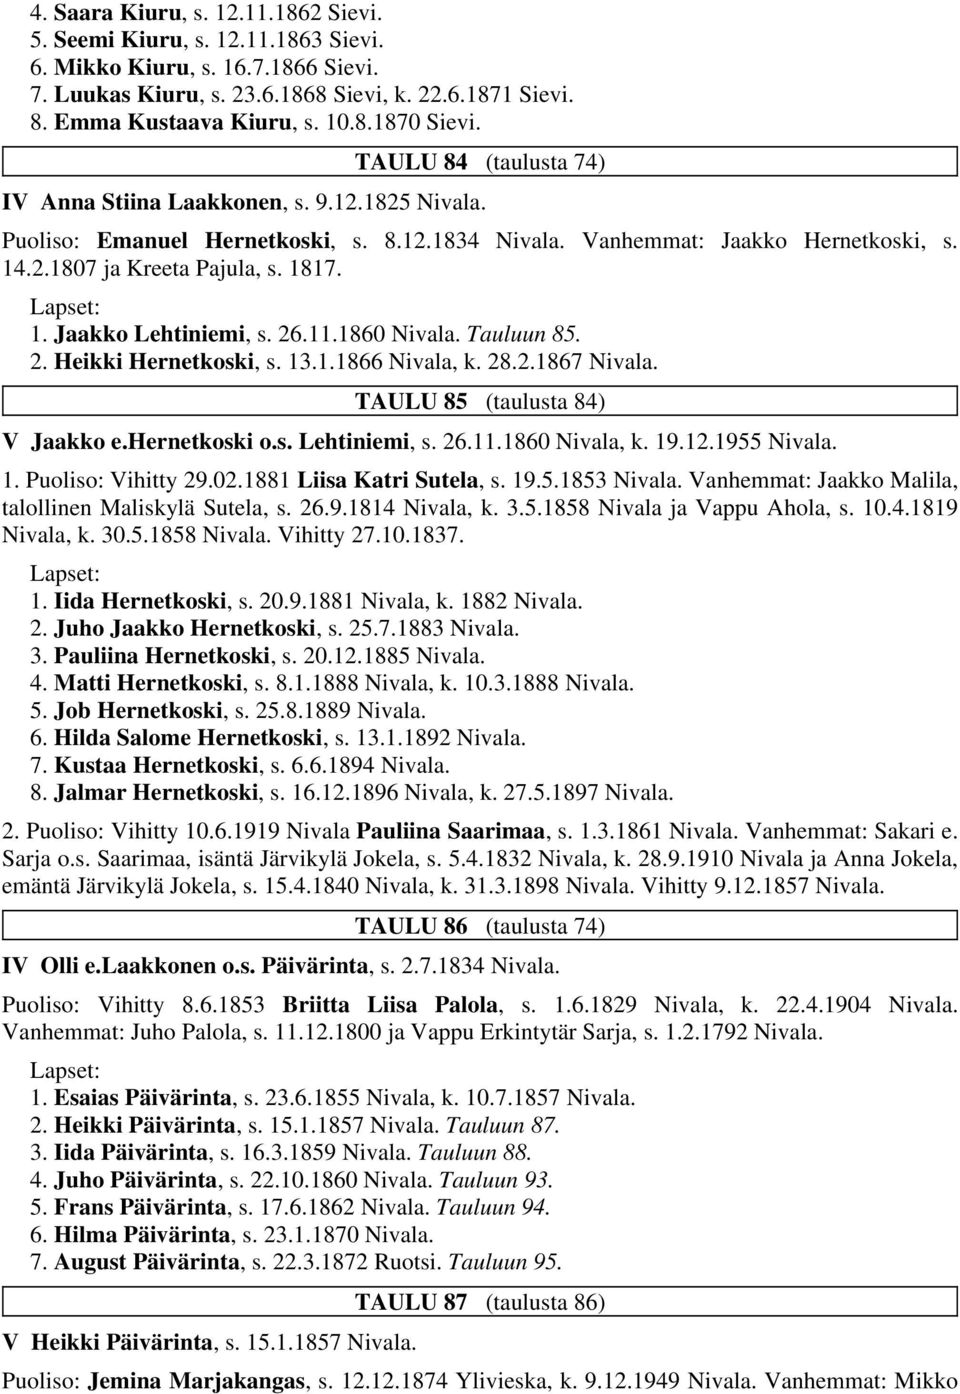 26.11.1860 Nivala. Tauluun 85. 2. Heikki Hernetkoski, s. 13.1.1866 Nivala, k. 28.2.1867 Nivala. TAULU 85 (taulusta 84) V Jaakko e.hernetkoski o.s. Lehtiniemi, s. 26.11.1860 Nivala, k. 19.12.